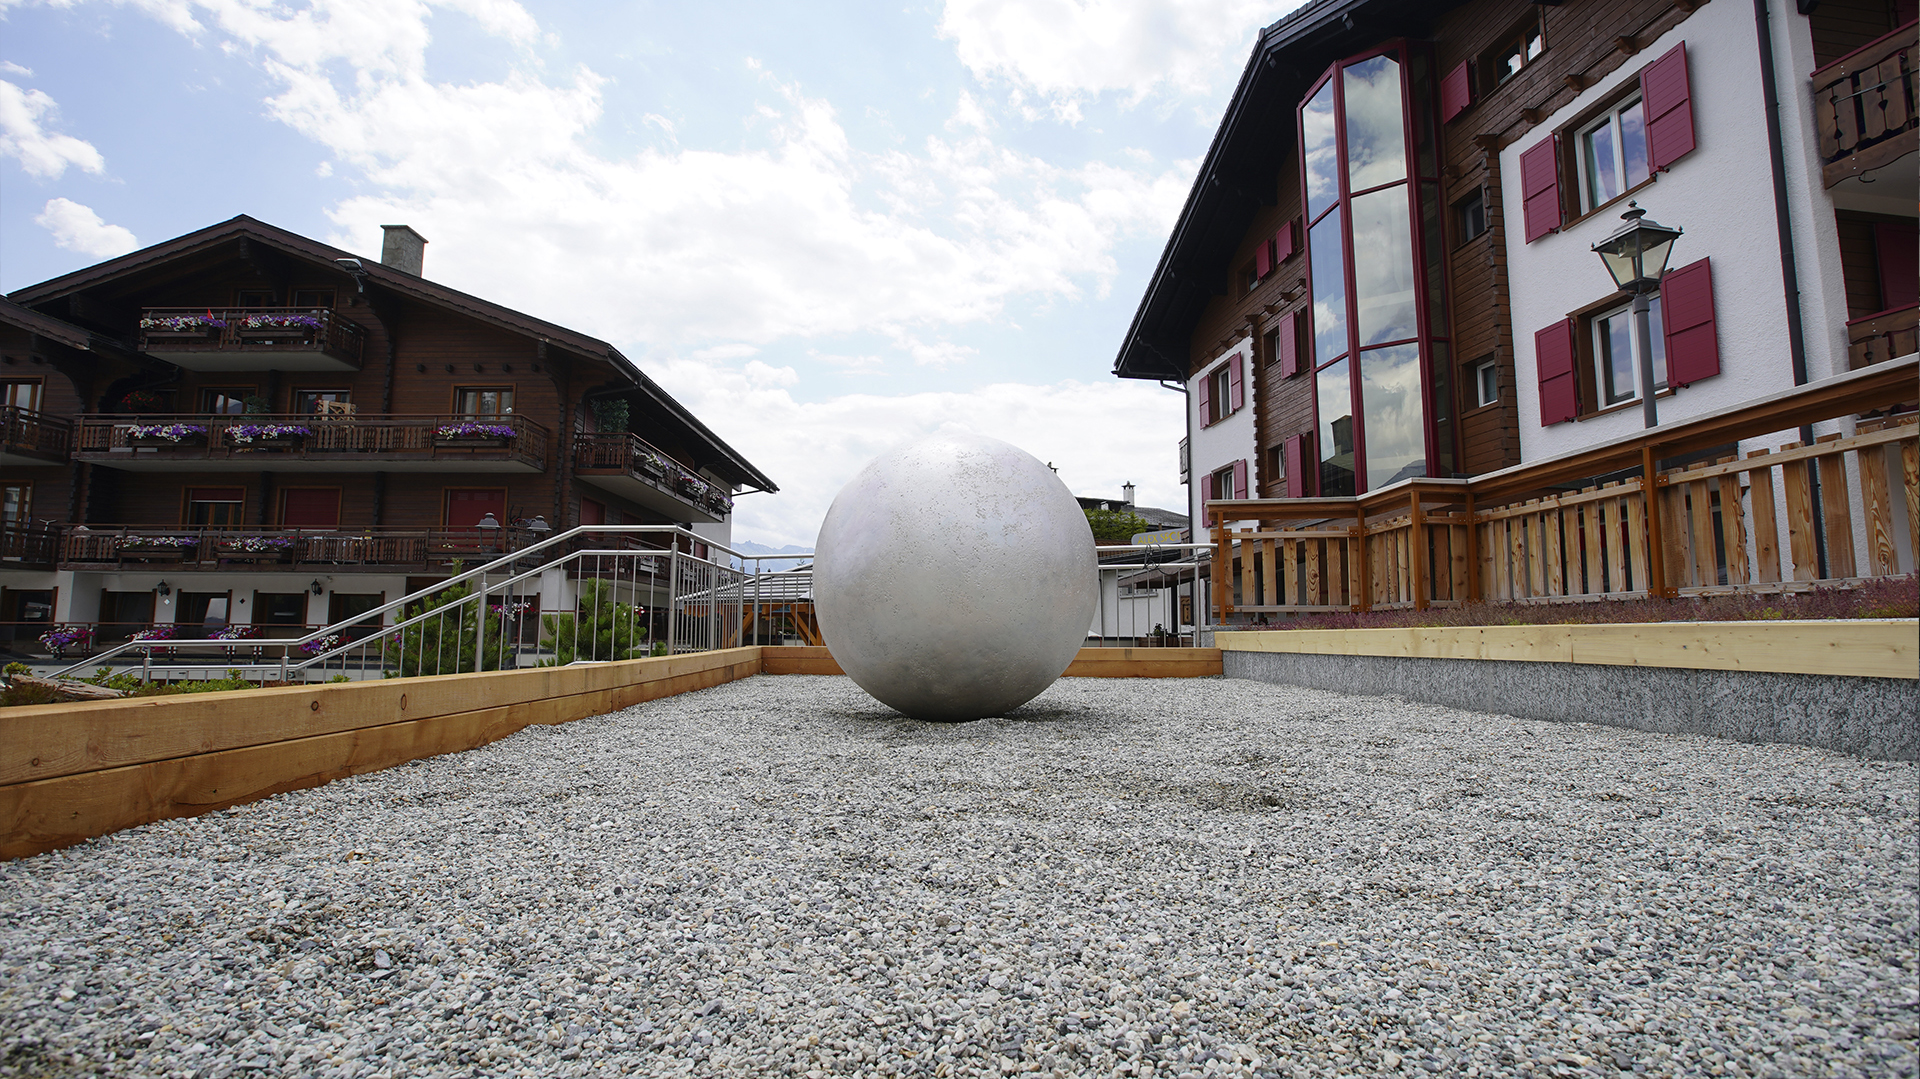 Con siete obras instaladas en el espacio público, la Bienal Internacional de Arte Contemporáneo del Sur llega a Suiza 

